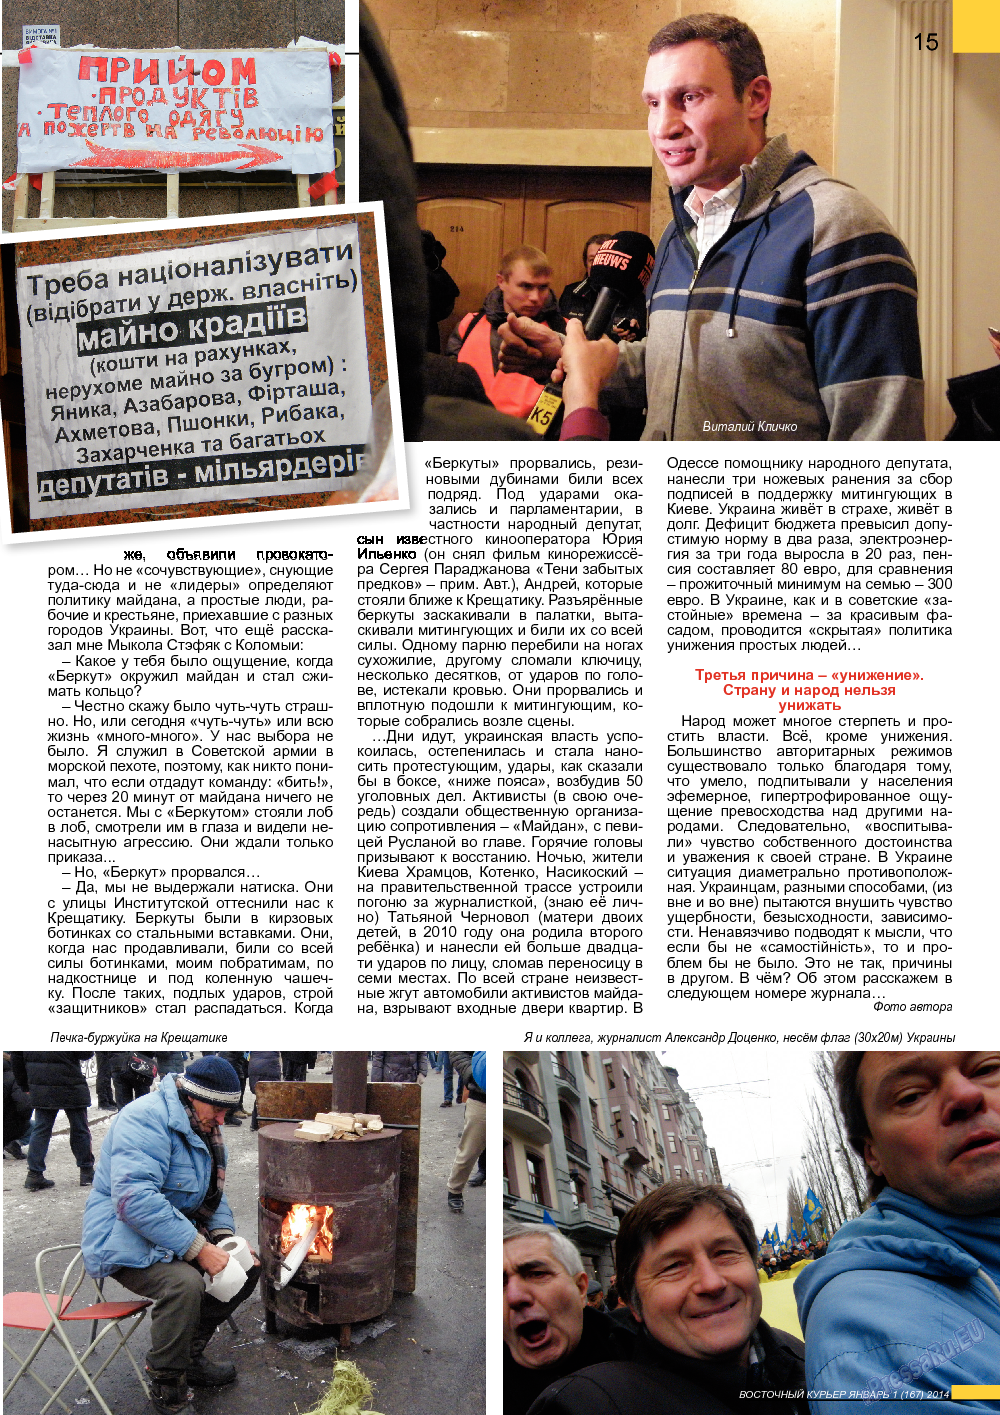 Восточный курьер (журнал). 2014 год, номер 1, стр. 15